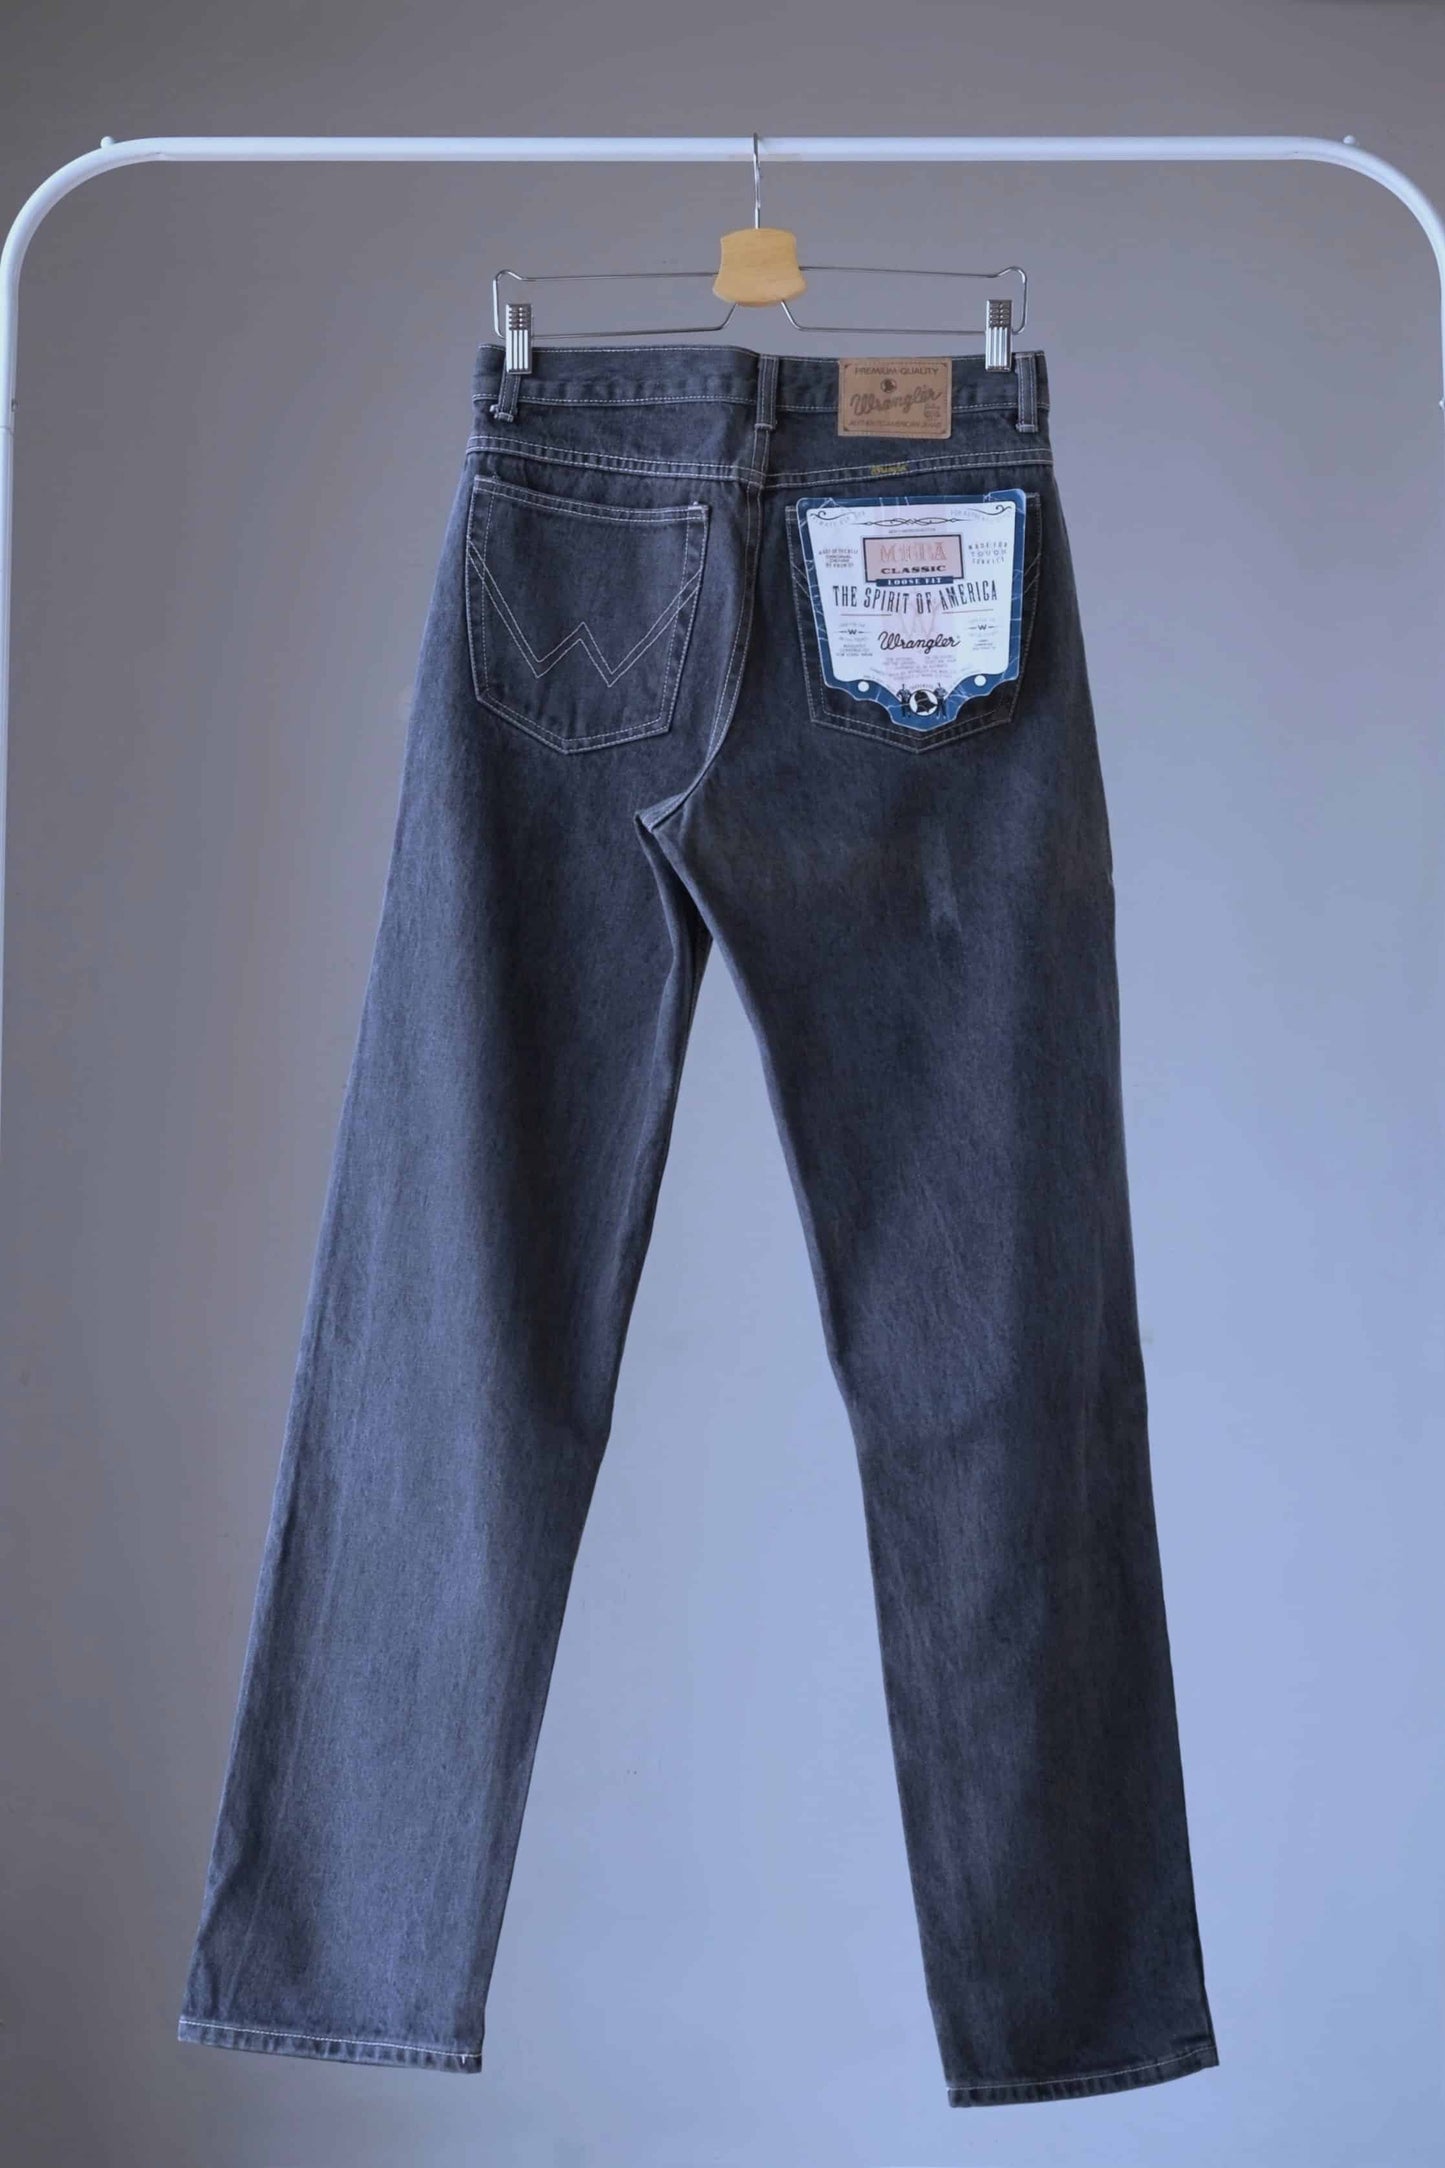 Back view of WRANGLER Vintage 90's Black Wash Jeans on hanger